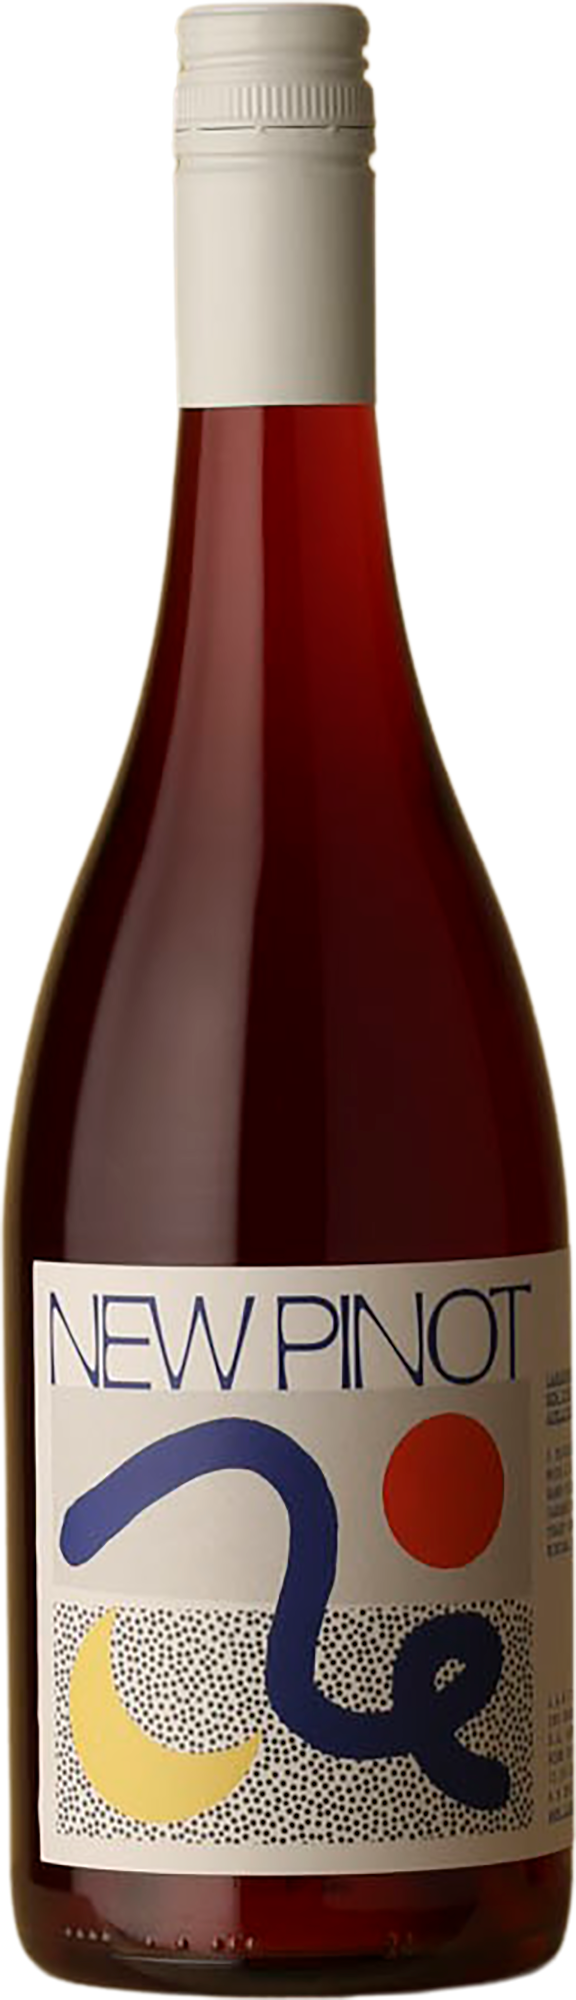 Lansdowne - New Pinot Pinot Noir 2021 Red Wine